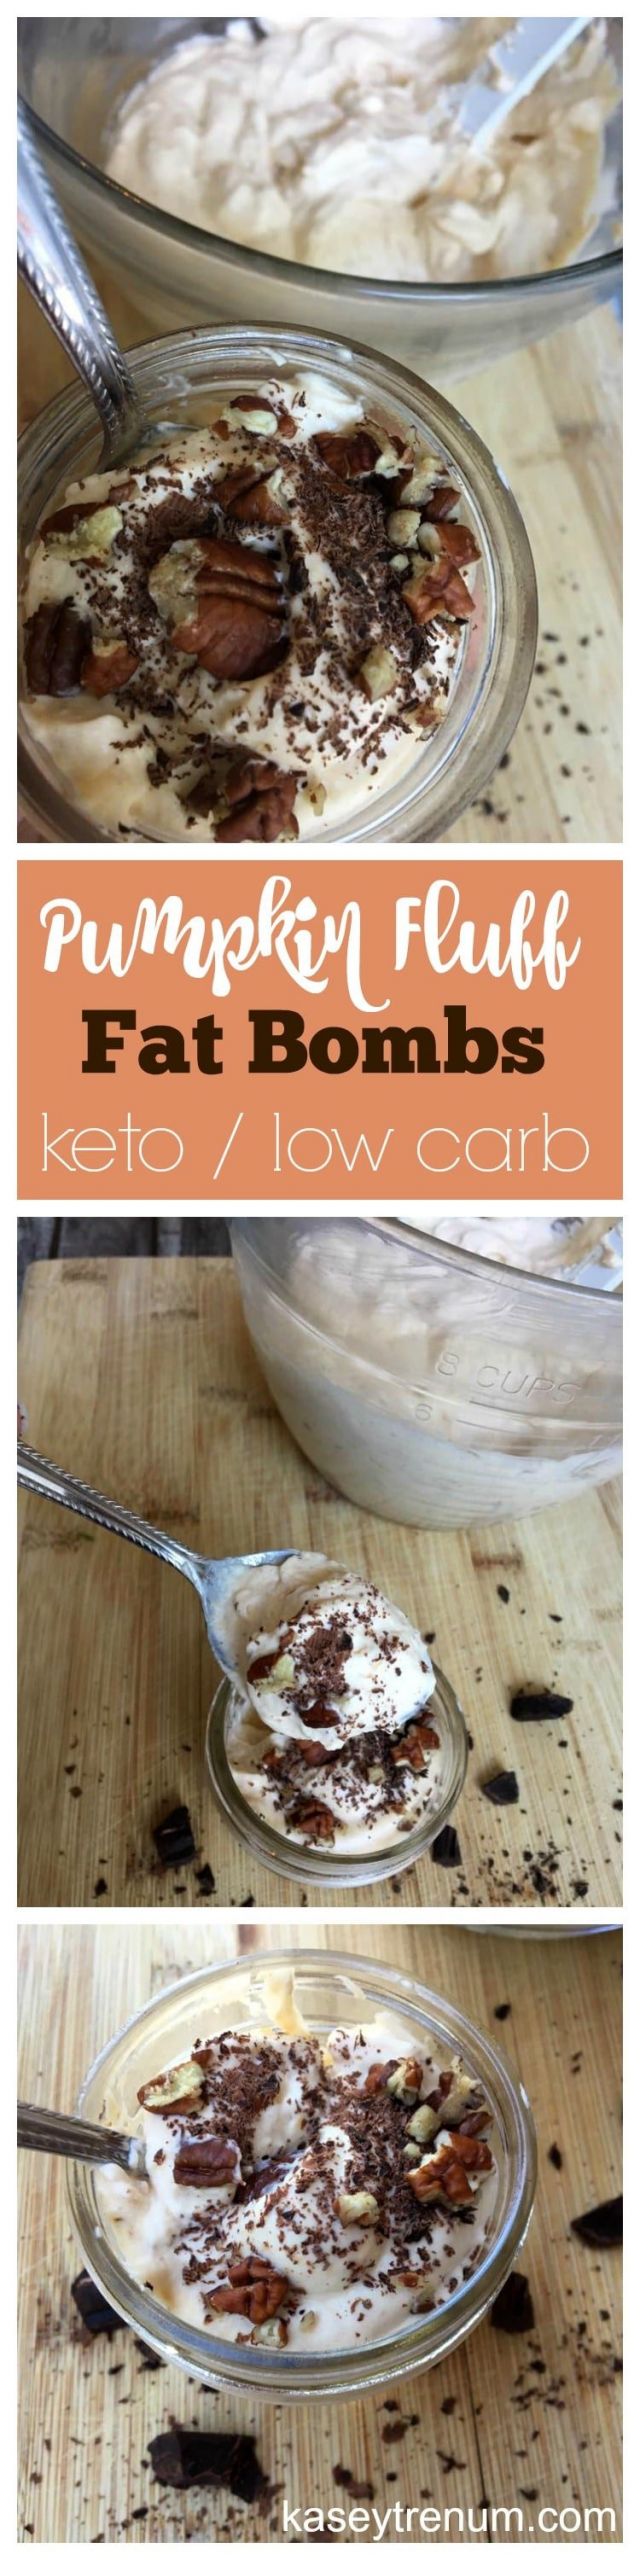 Pumpkin Keto Recipes Fat Bombs
 Keto Pumpkin Fluff Fat Bombs Recipe